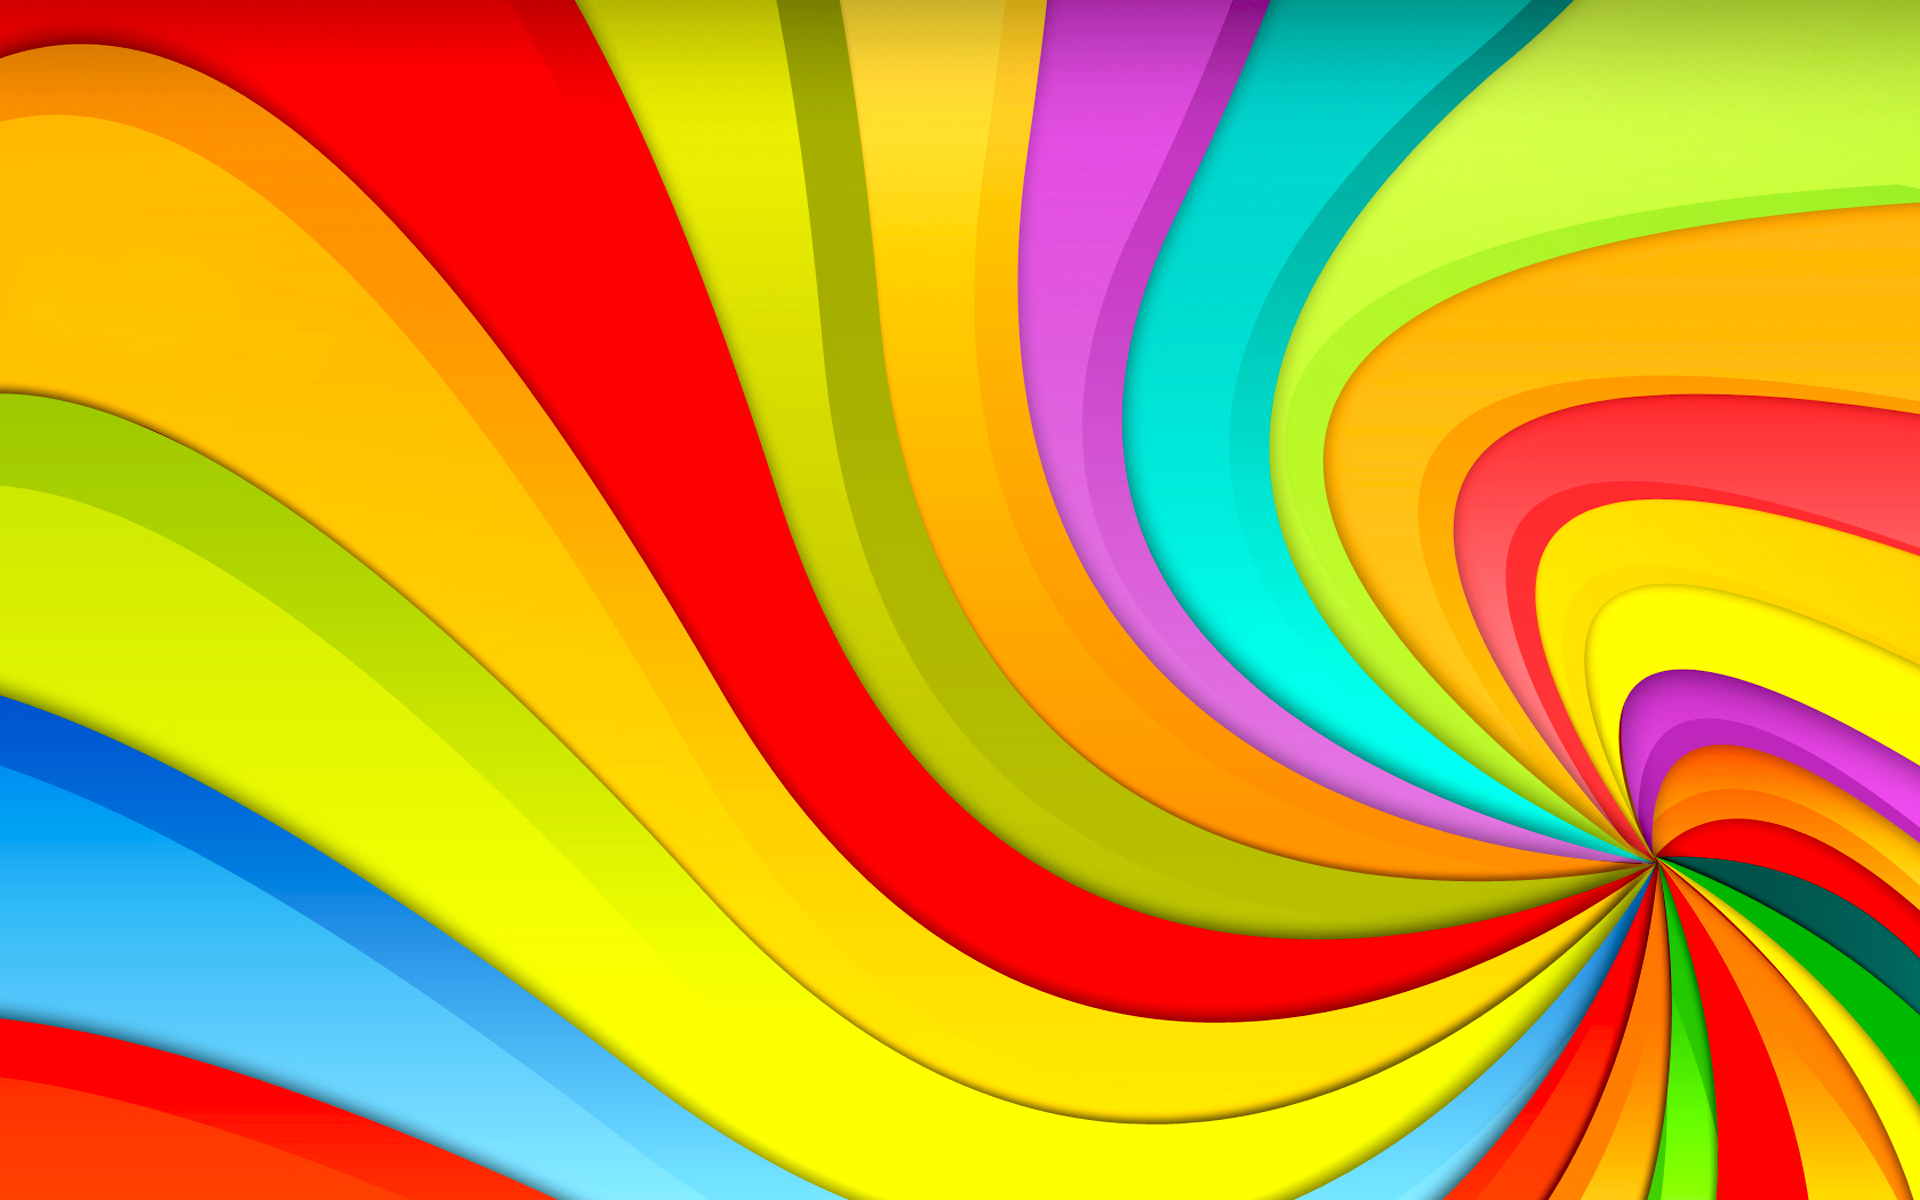 The Swirly Rainbow Wallpaper